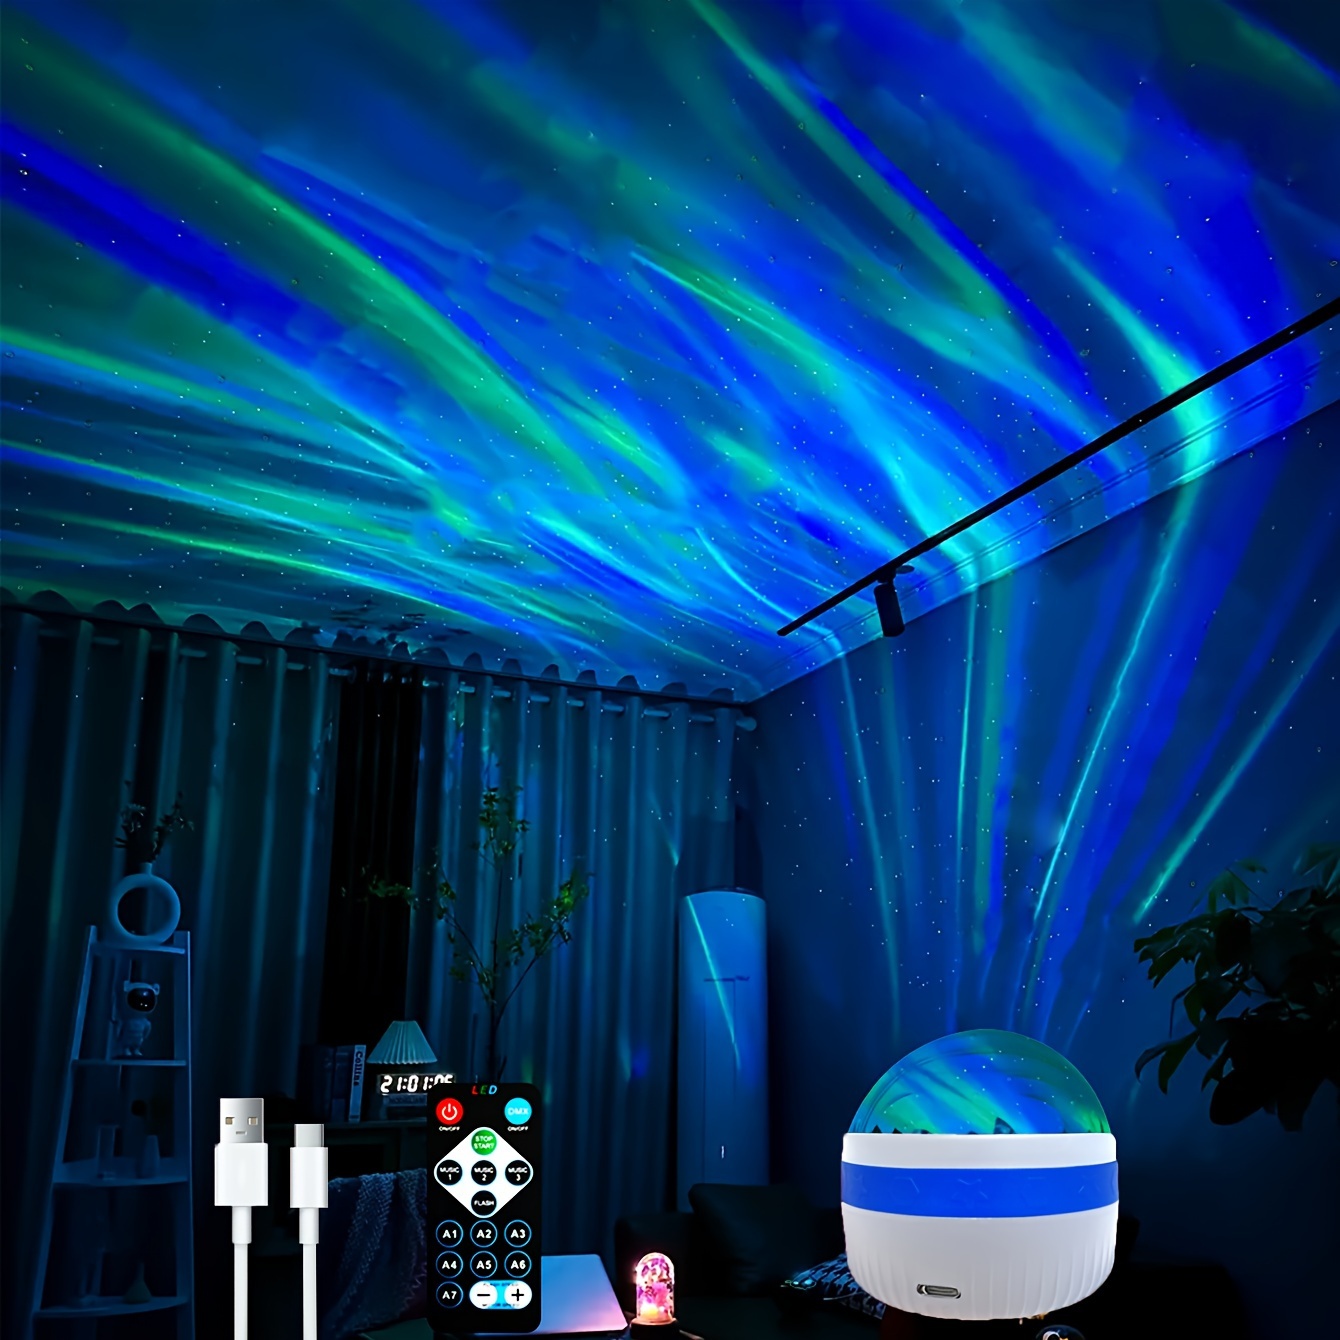 Proyector Estrellas, Ranipobo LED de Luz Nocturna con control remoto  yaltavoz de 